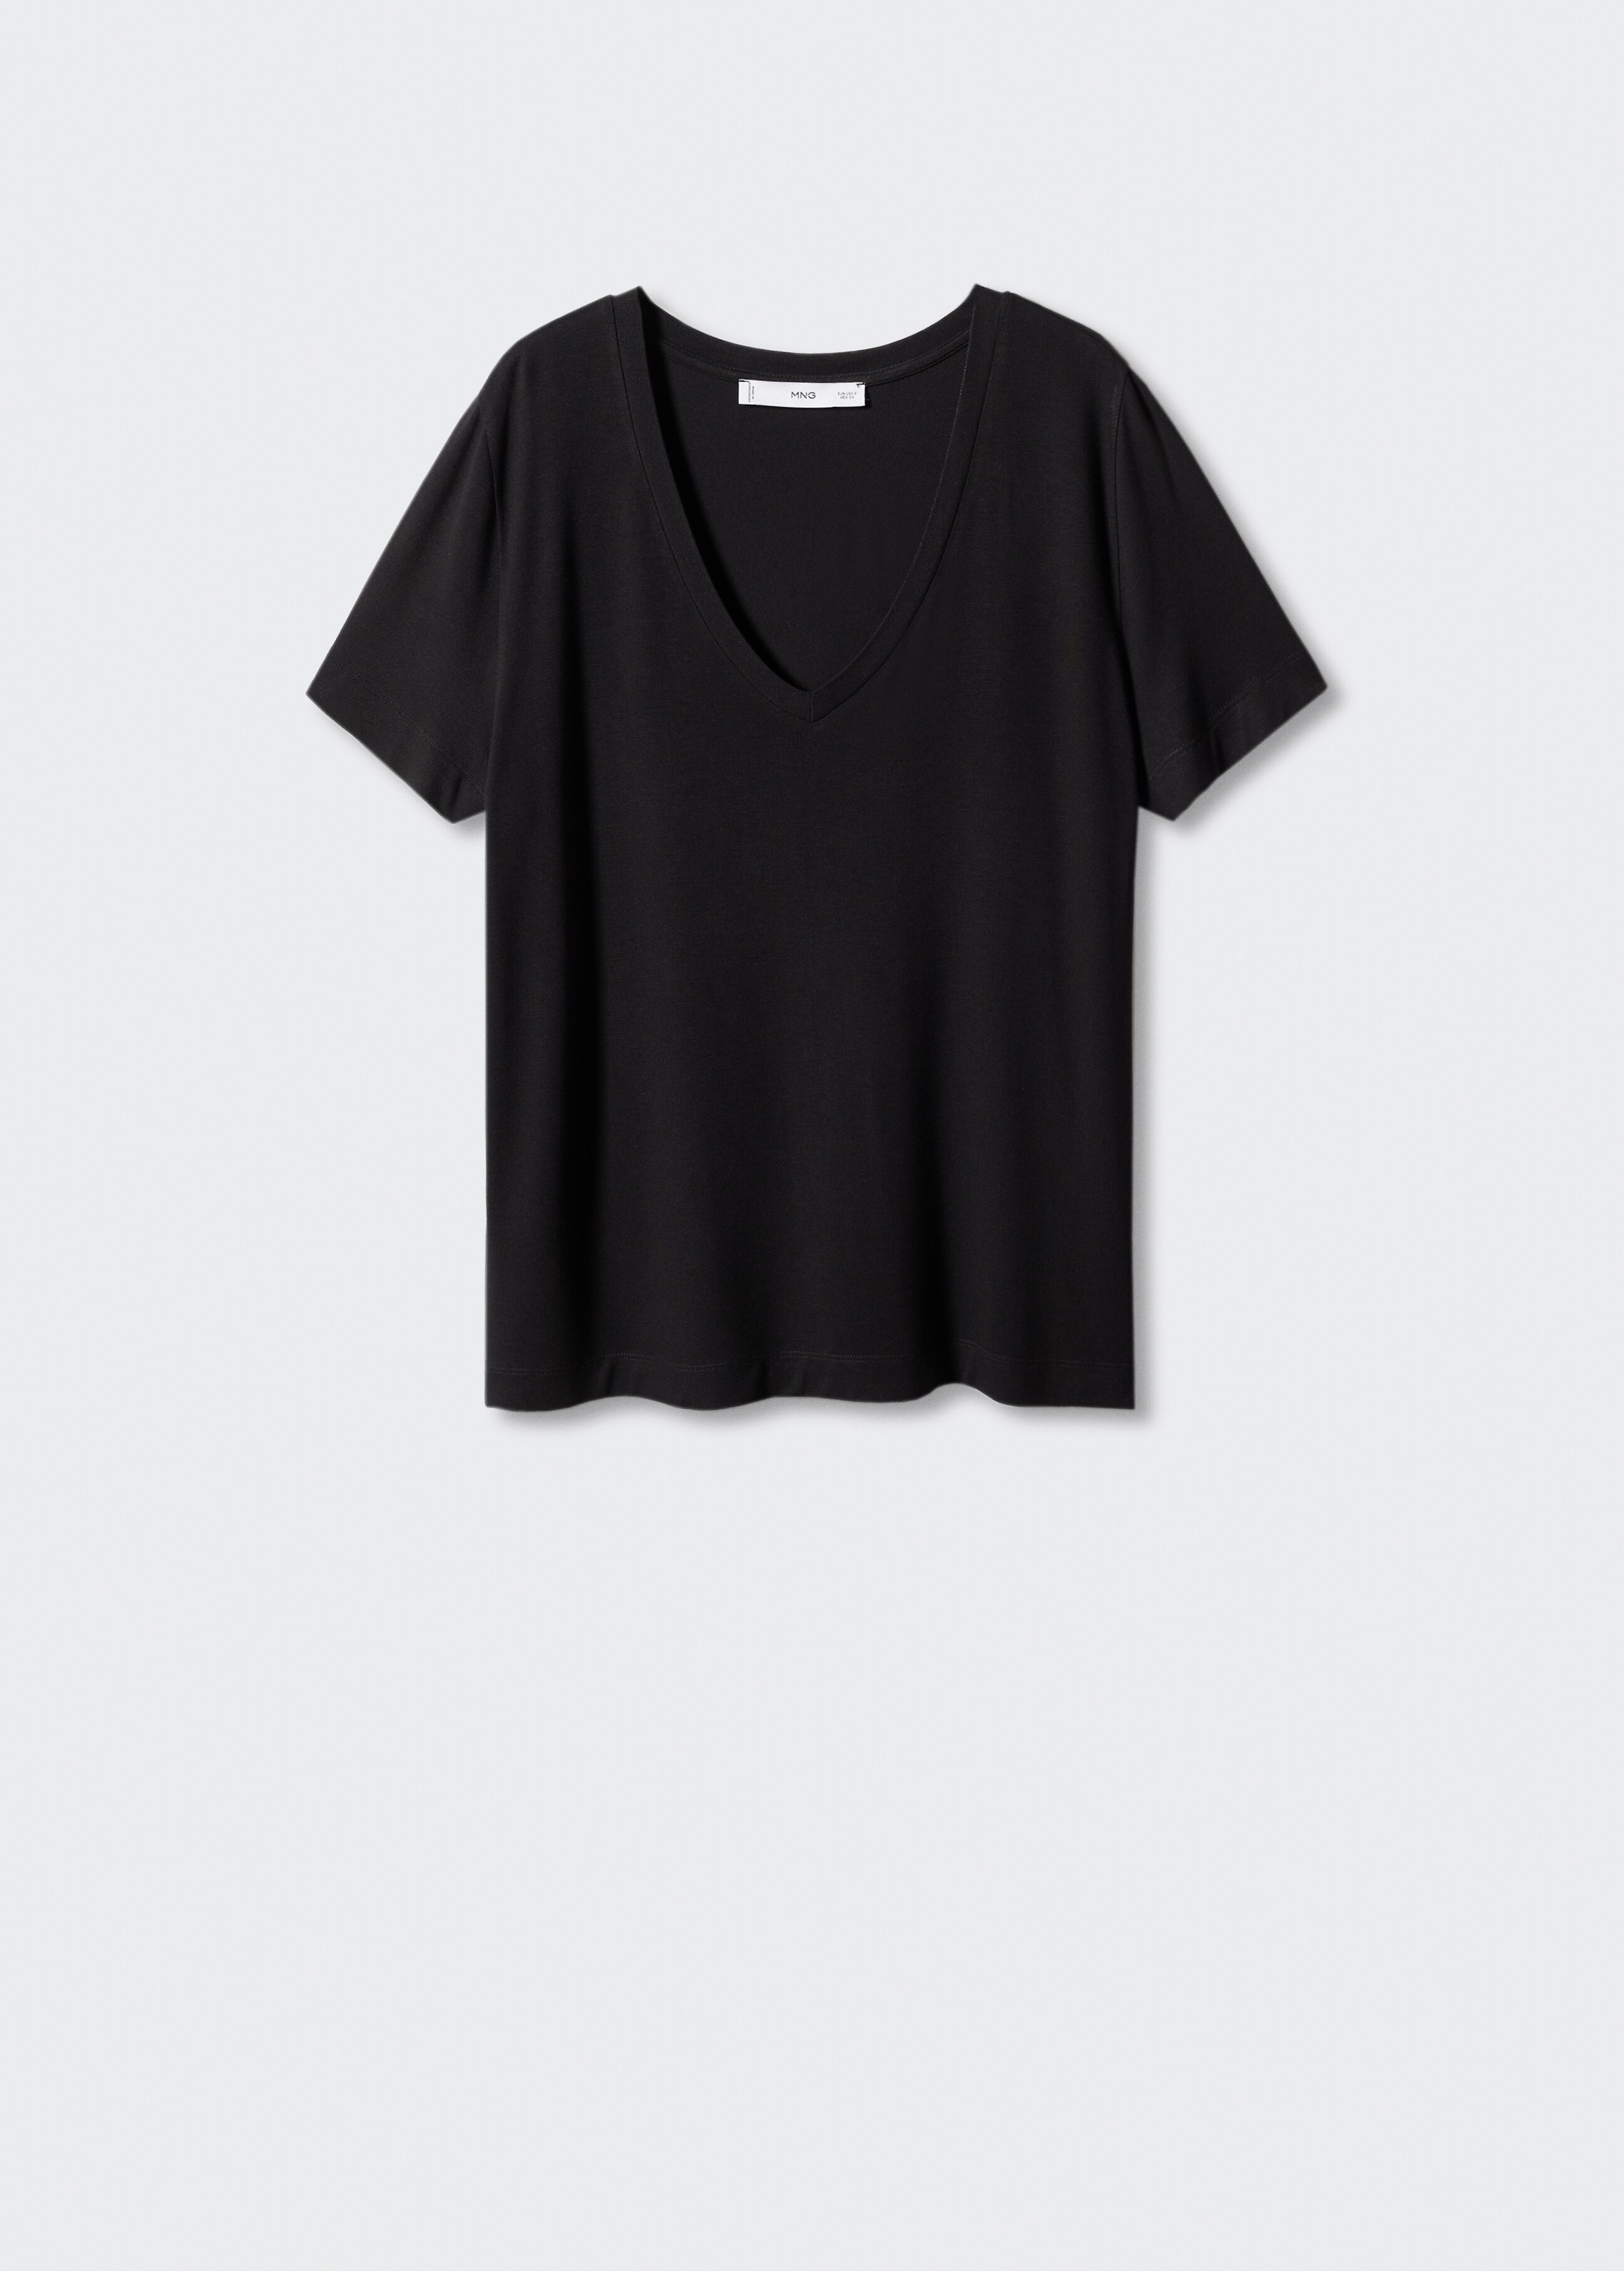 Camiseta cuello pico - Artículo sin modelo